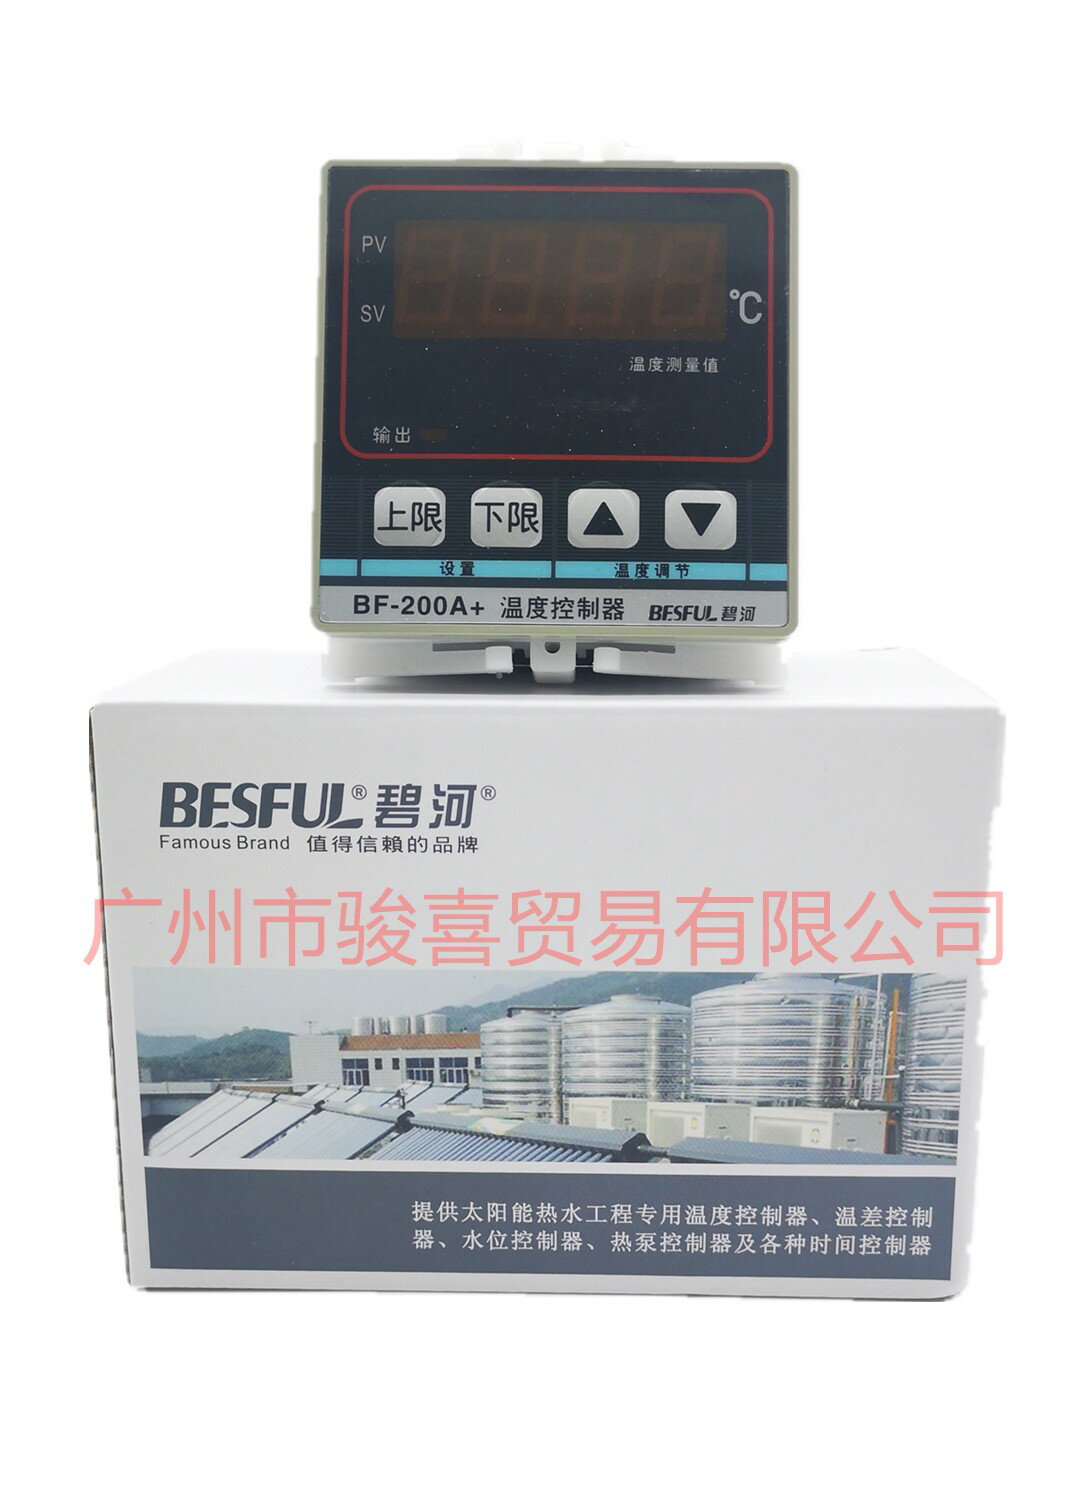 廣州代理商碧河太陽能溫度控制器BF-200A+單路測量1路輸出溫控儀